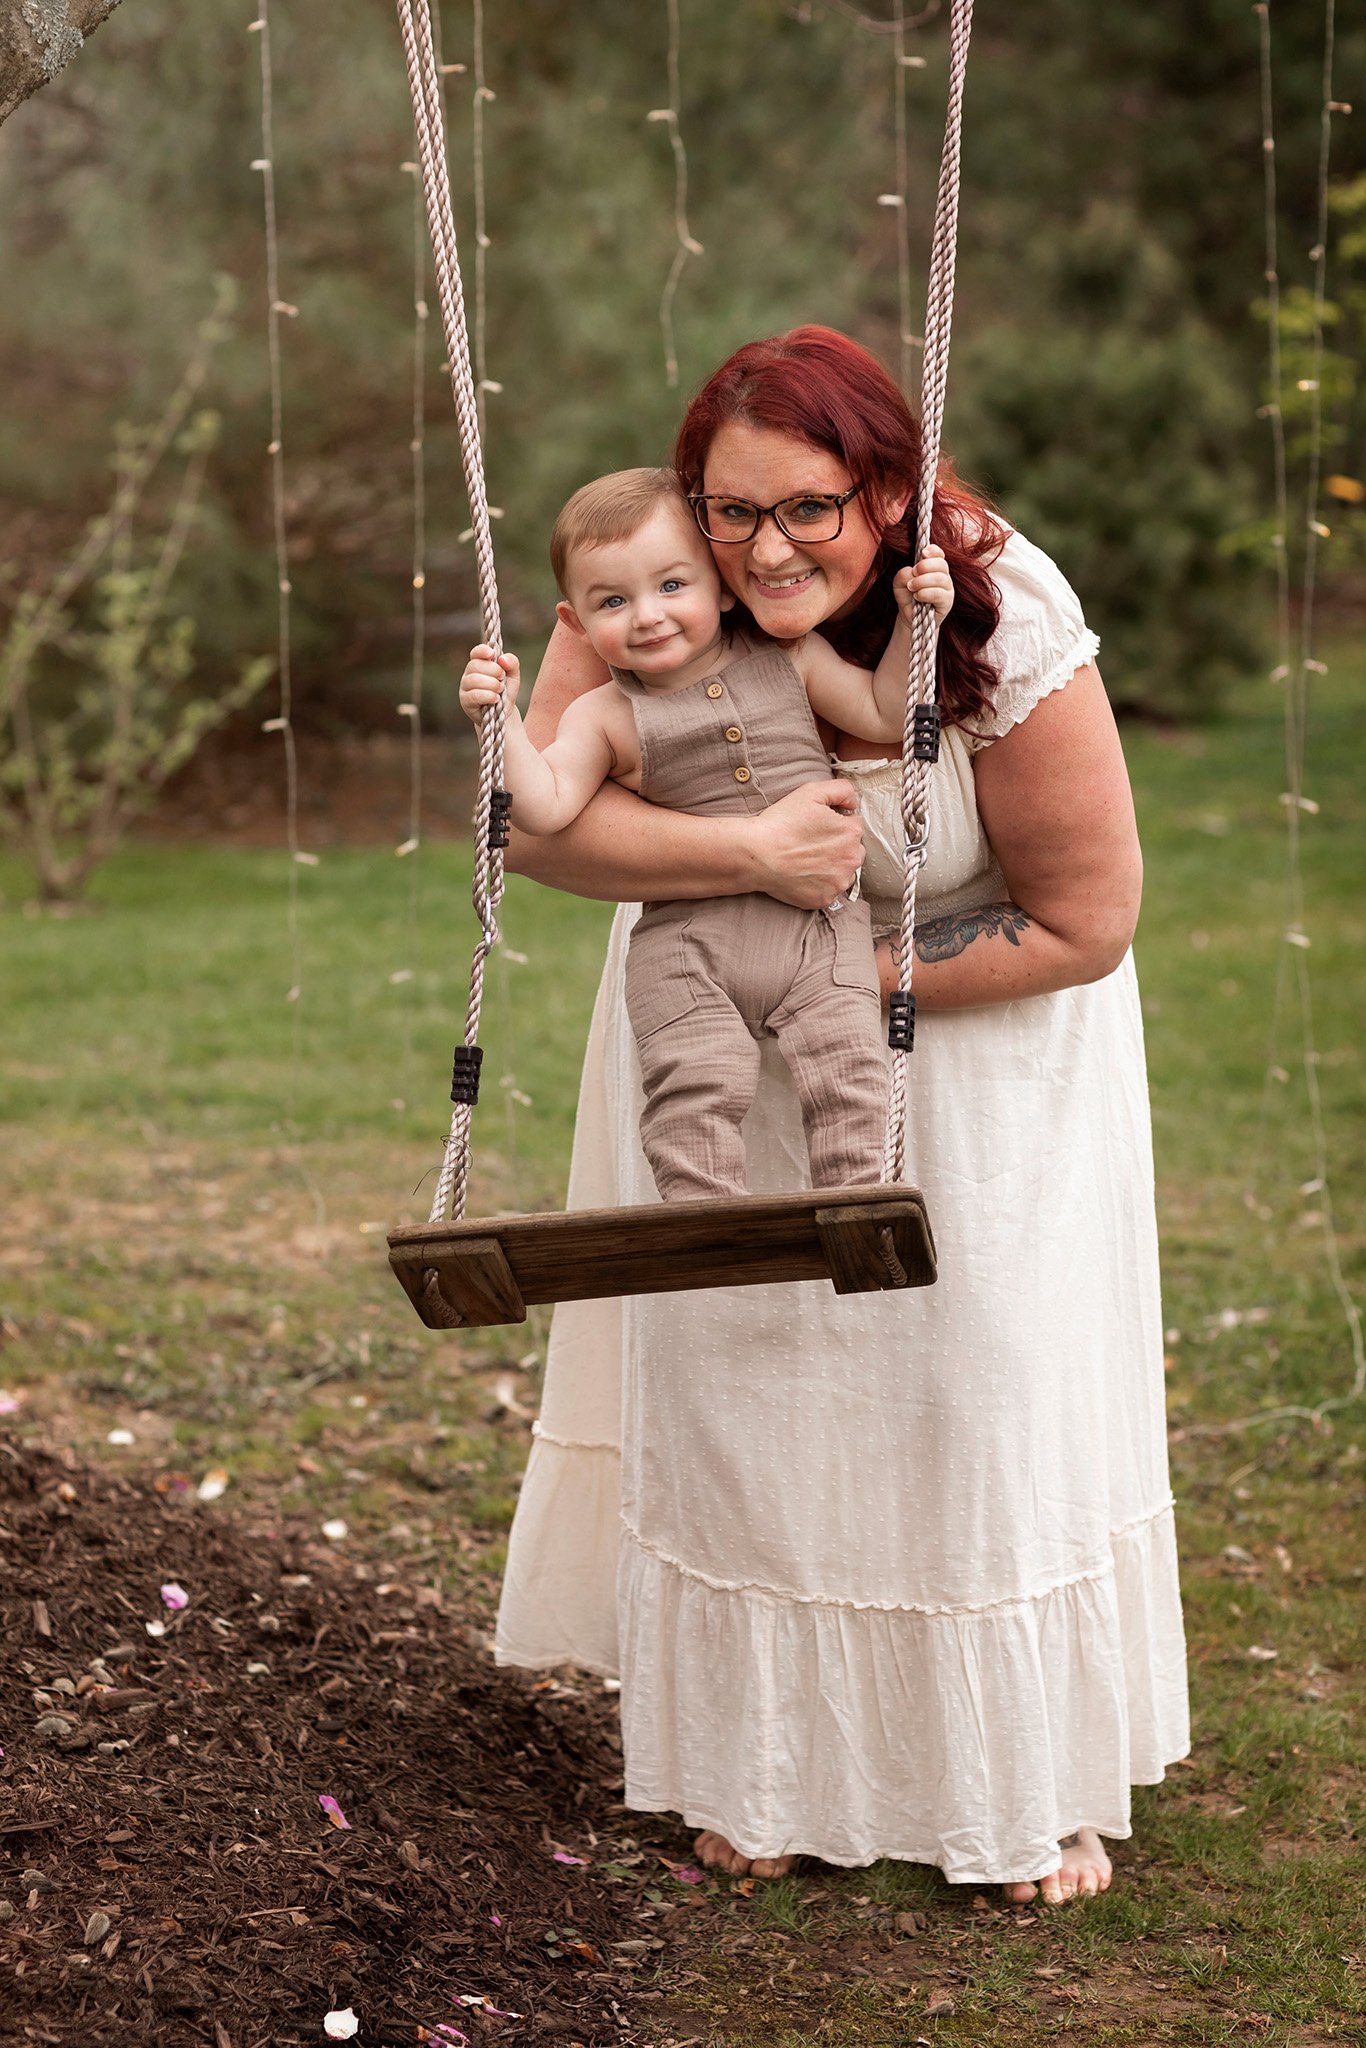 MotherhoodPhotography  mom and boy on swing